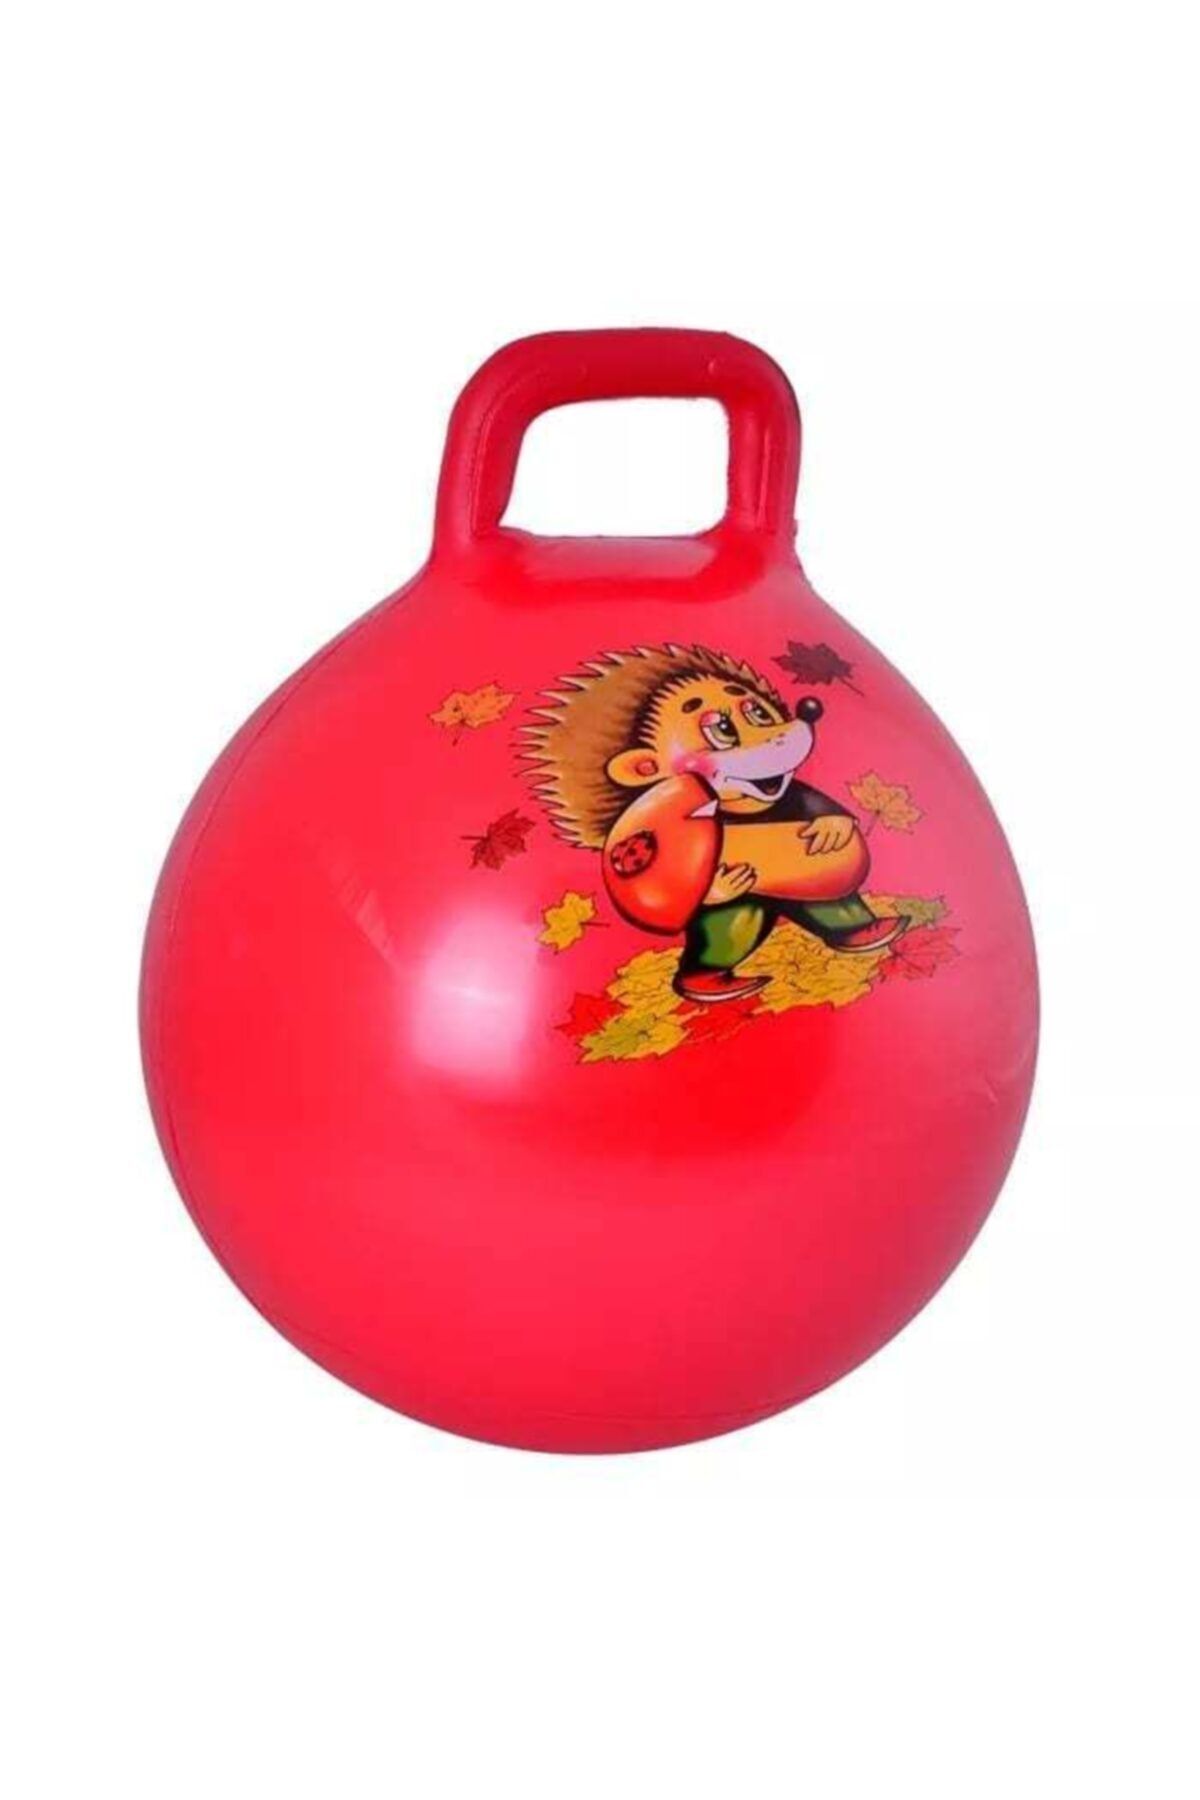 MOYASHOP Kırmızı Tutmalı Zıplayan Pilates Topu - Çocuk Oyun - Spor - 55 Cm , 450 gr .